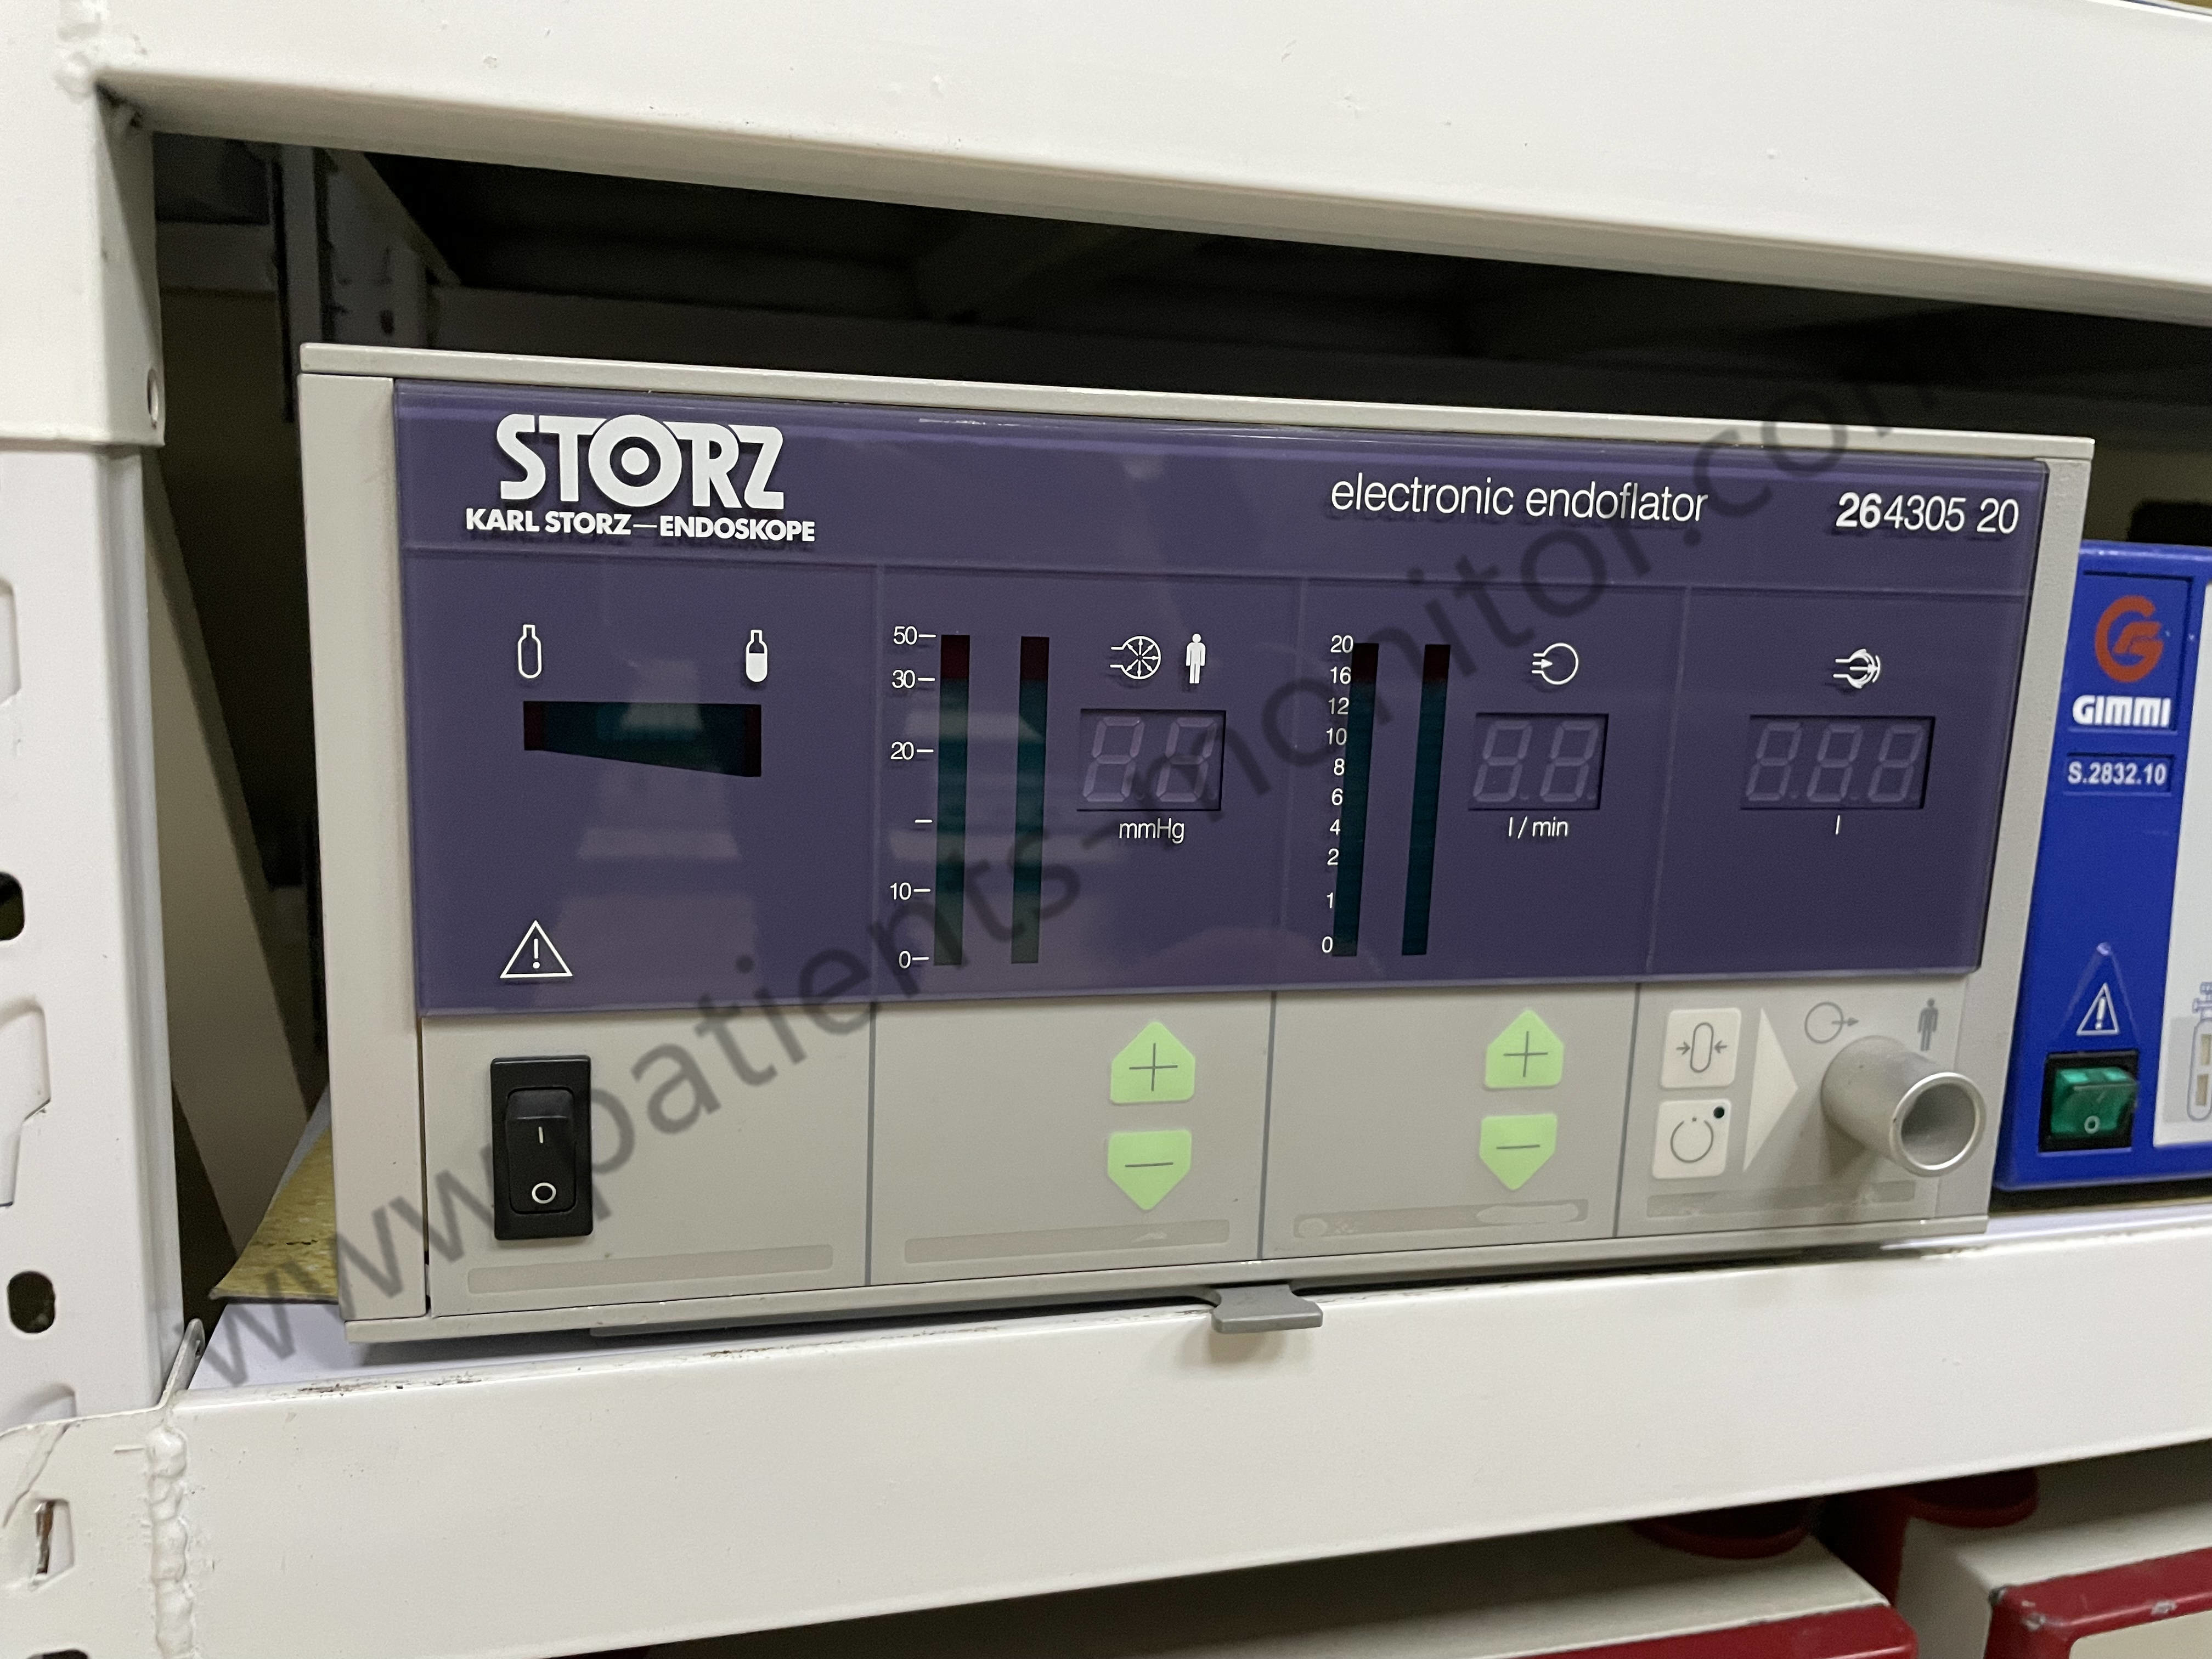 KARL STORZ Elektronik Endoflatör 264305 20 Hastane Tıbbi İzleme Cihazları